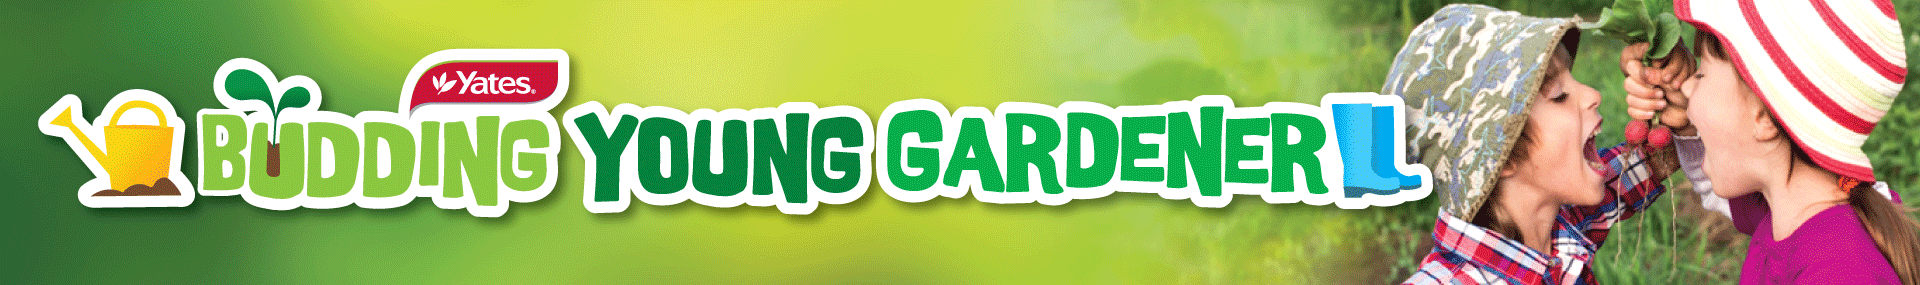 budding-gardener-logo-web-2020v4